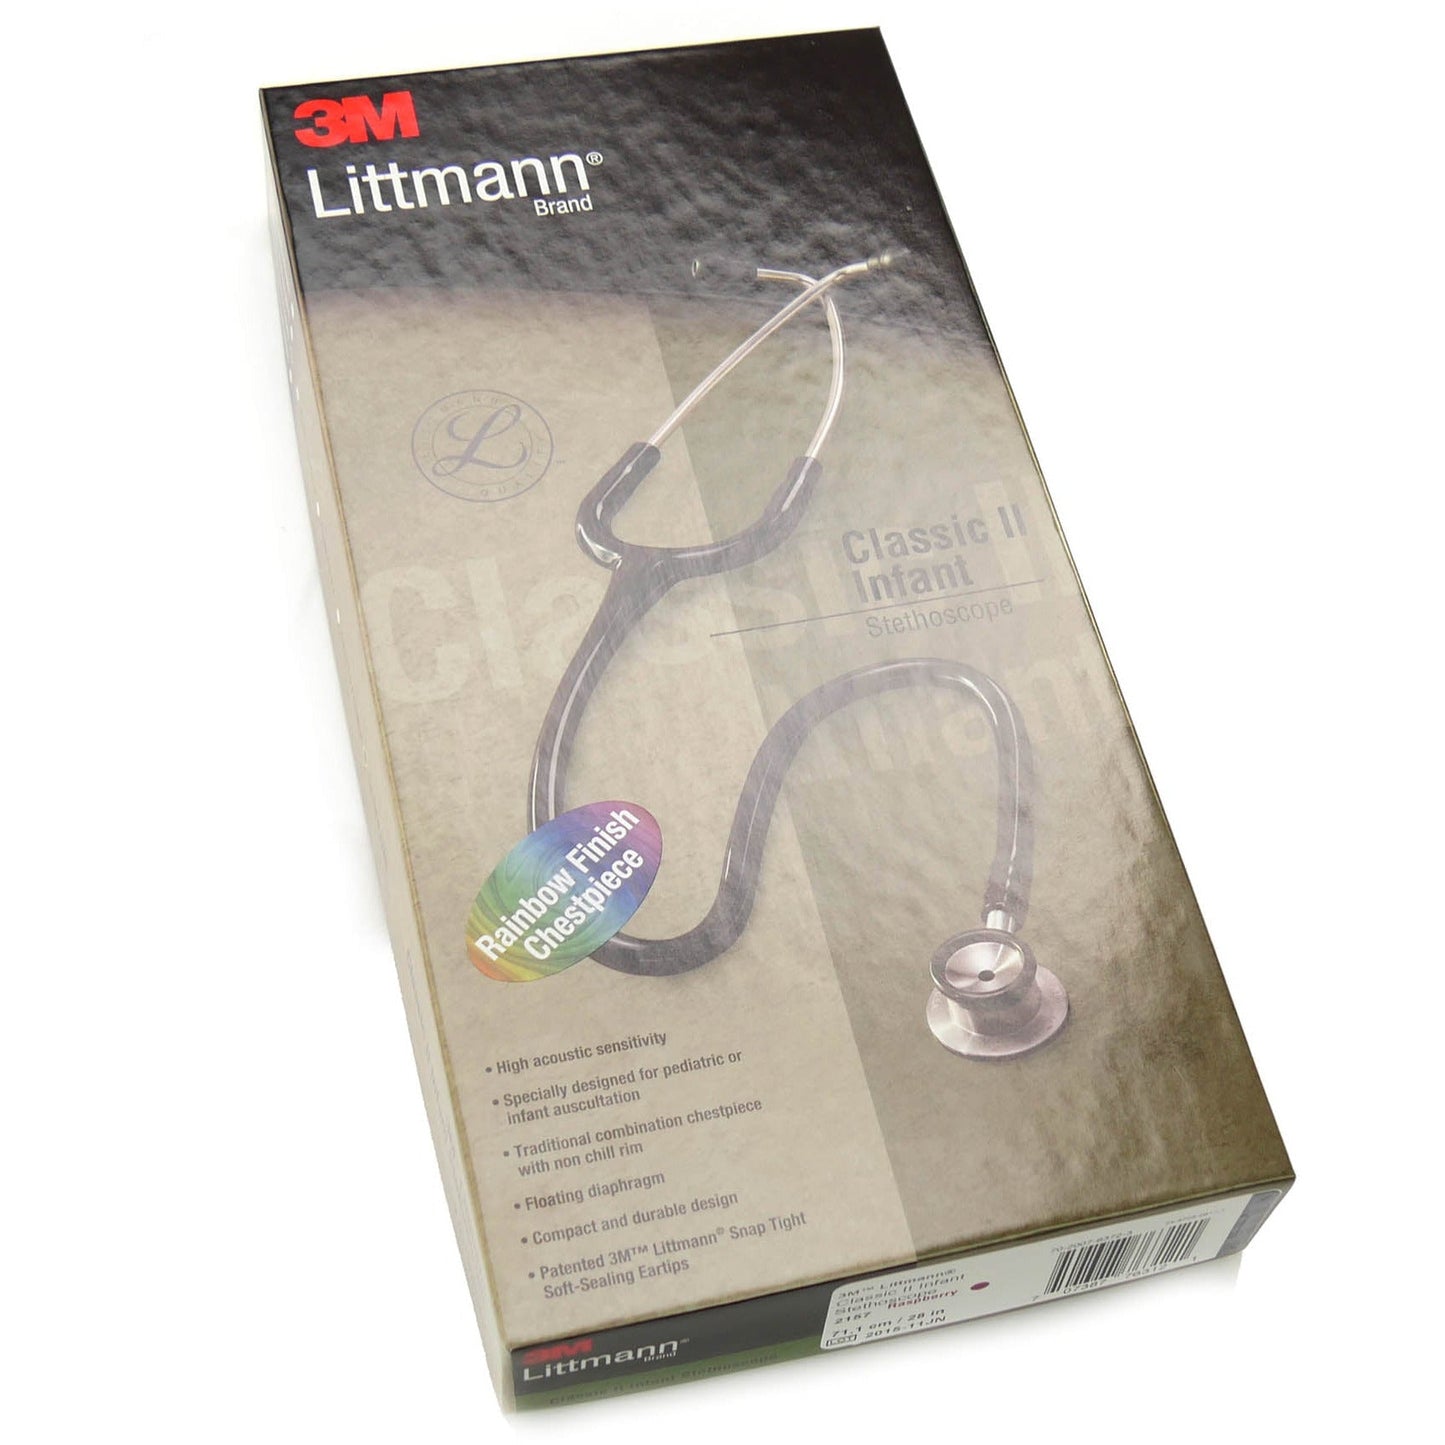 Stetoskopju tat-trabi Littmann Classic II: Rainbow tal-lampun 2157